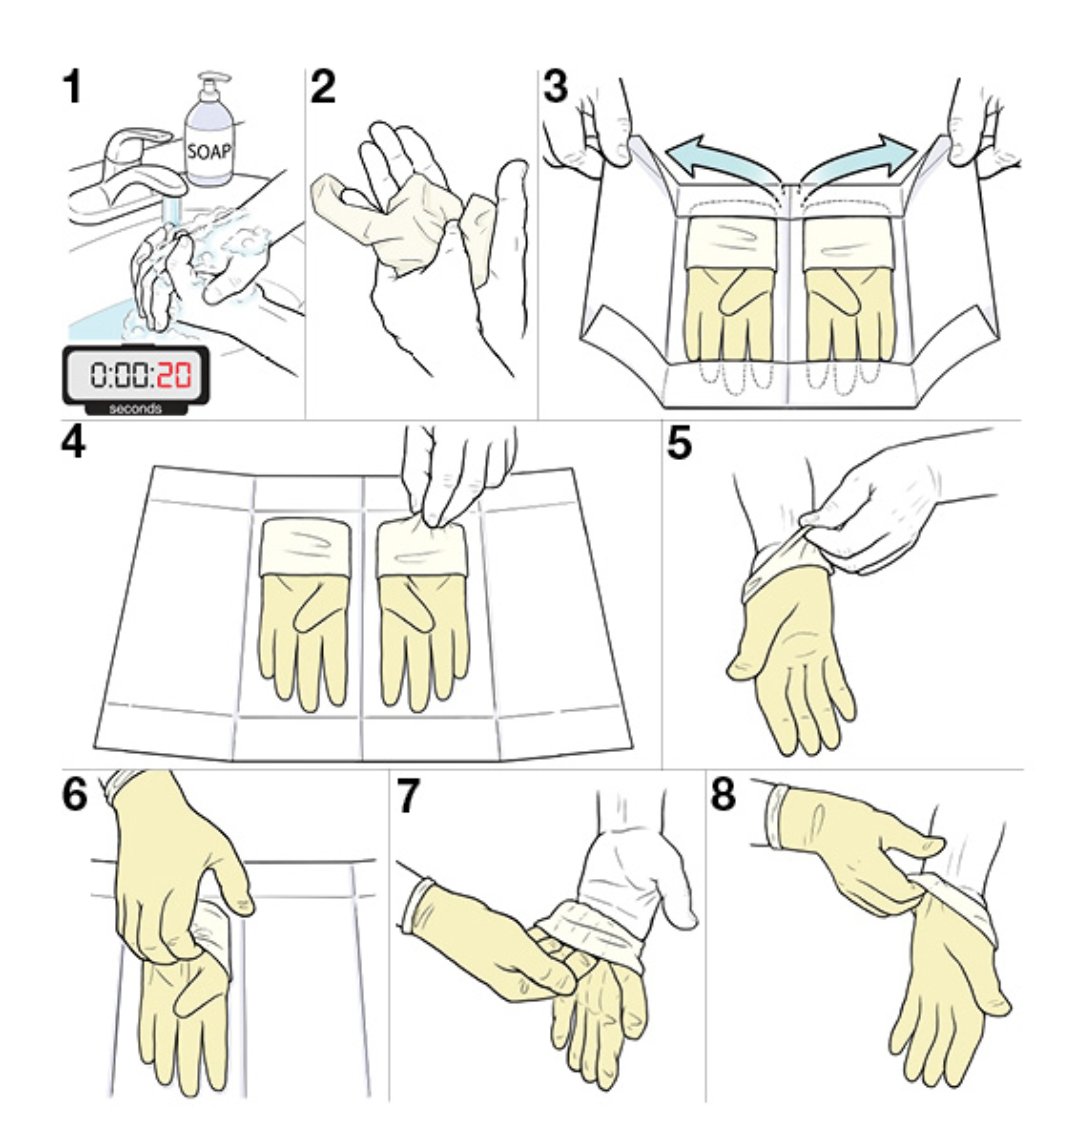 Алгоритм стерильных перчаток. Одевание и снятие стерильных перчаток алгоритм. Схема надевания стерильных перчаток. Одевание стерильных перчаток алгоритм. Техника одевания стерильных перчаток алгоритм.